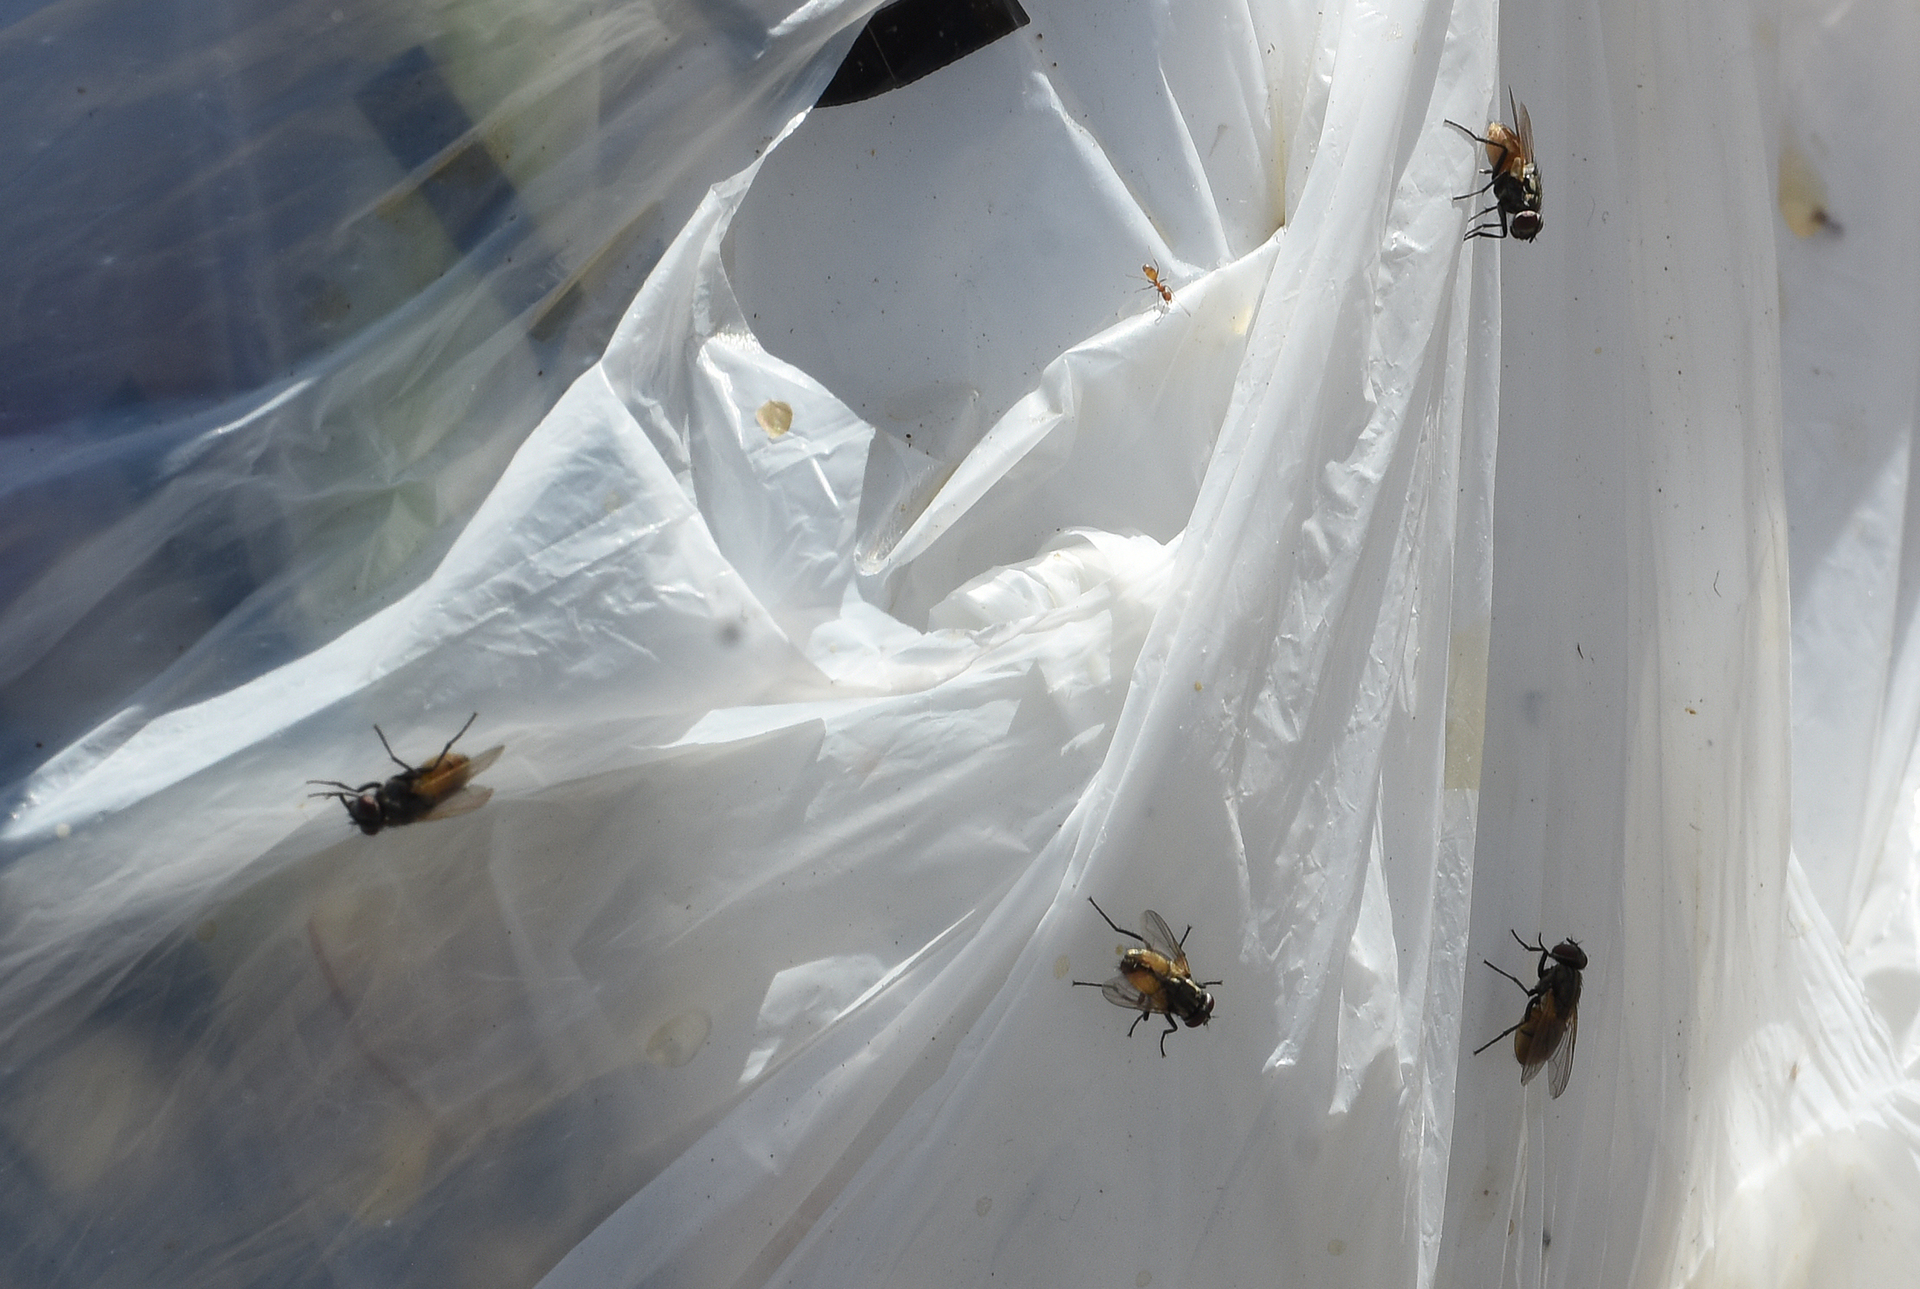 Proliferan moscas en Monclova, hay riesgos a la salud